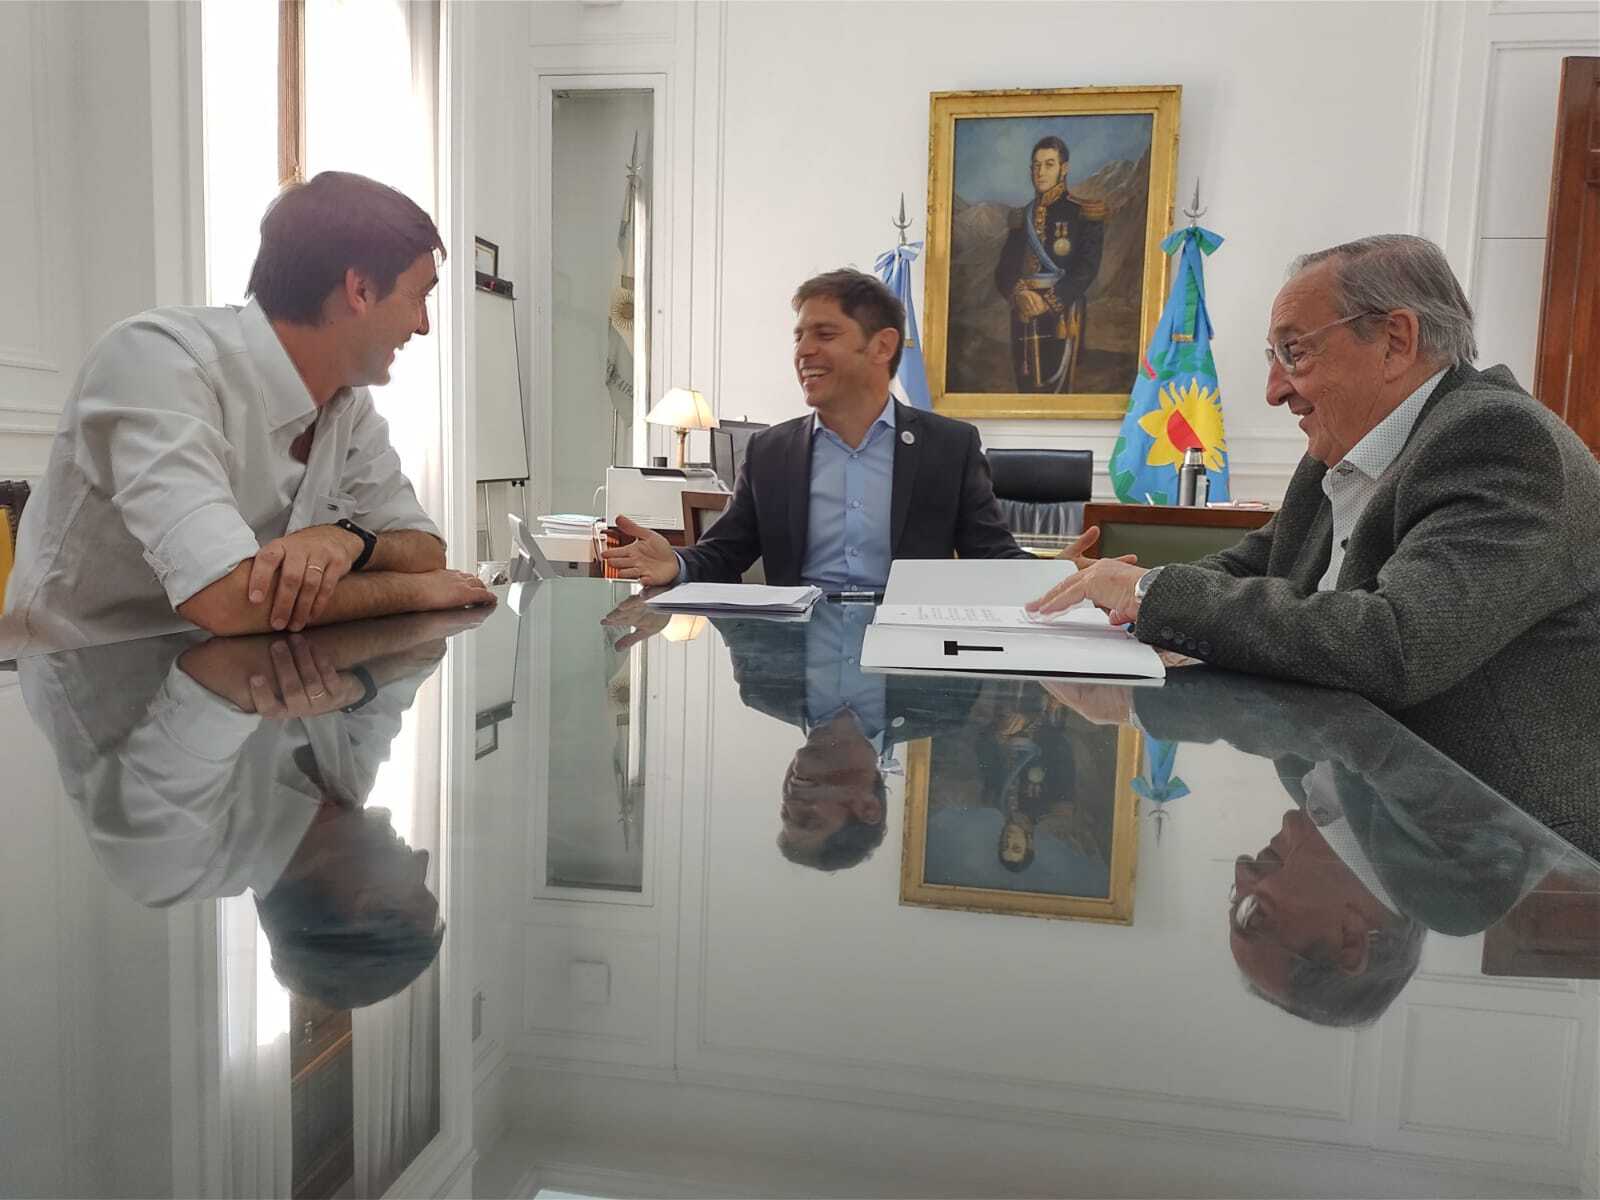 Kicillof se reunió en La Plata con el intendente Lunghi y el diputado Iparraguirre